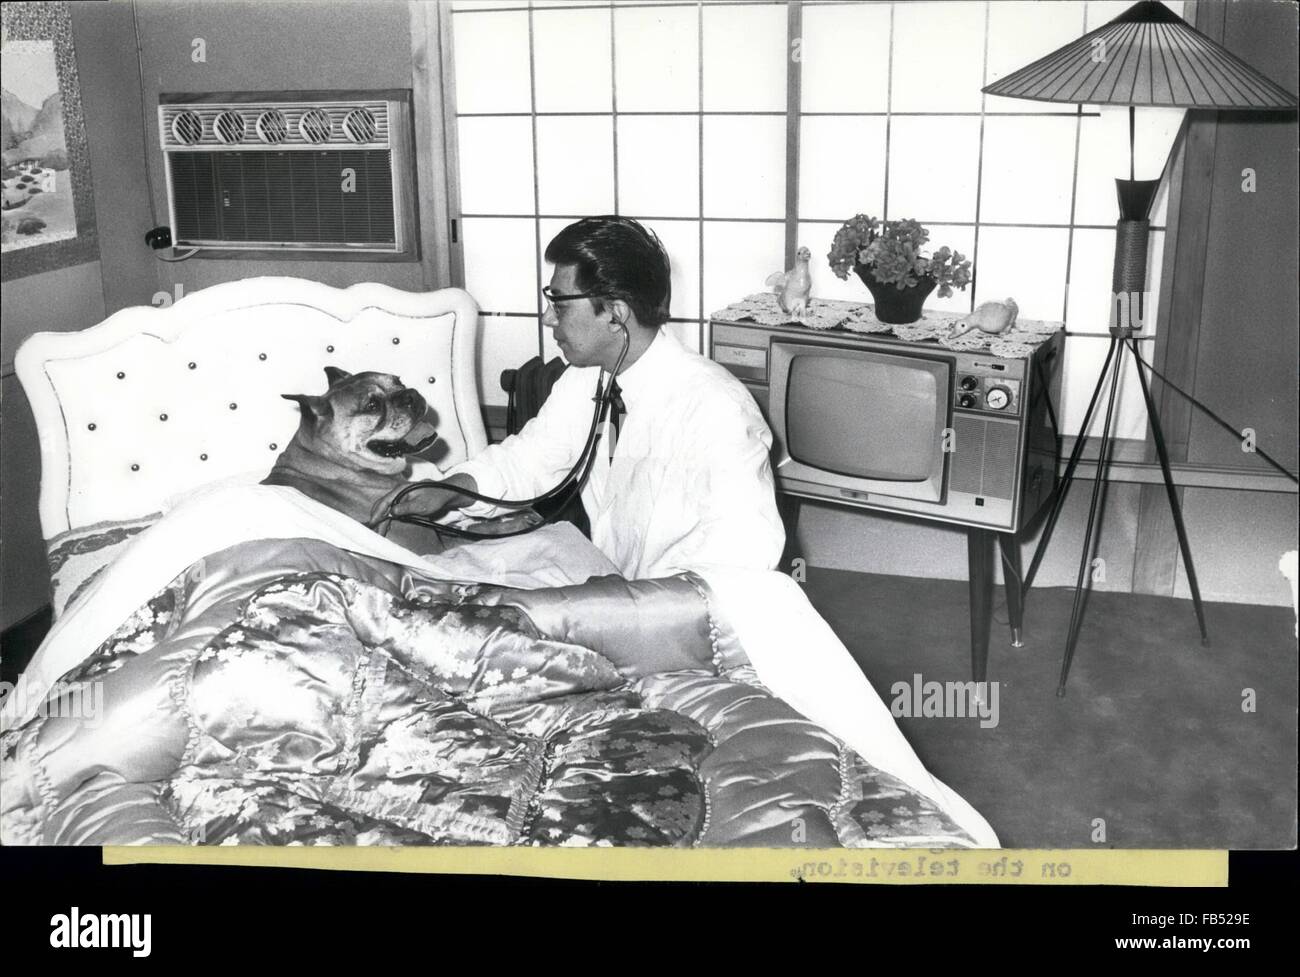 1968 - Luxushotel für Hunde; Tokoyo: Wohlhabende japanische Hundeliebhaber senden ihre Haustiere zum Abschnitt Hotel Iwamoto Animal Hospital in Nakano Bezirk von Tokio für Rest und Rerecuperation, waschen und Brush-up [Haarschnitt, Pediküre und Generalüberholung. Einige der ''-Clients'' Liebe es und will nicht zu verlassen. Es gibt keine Zwinger, nur 49 Zimmer, darunter 4 Luxussuiten, die alle klimatisiert, teilweise mit Betten, Bäder und Farb-TV-Sets. Hier kann Hund geeignet Kumpels treffen ein weiterer Grund warum einige von ihnen es schwer finden, nach Hause zu gehen. Die Luxus-Suiten Kosten 3 pro Tag, und dieser '' ein '' Abschnitt ist Stockfoto